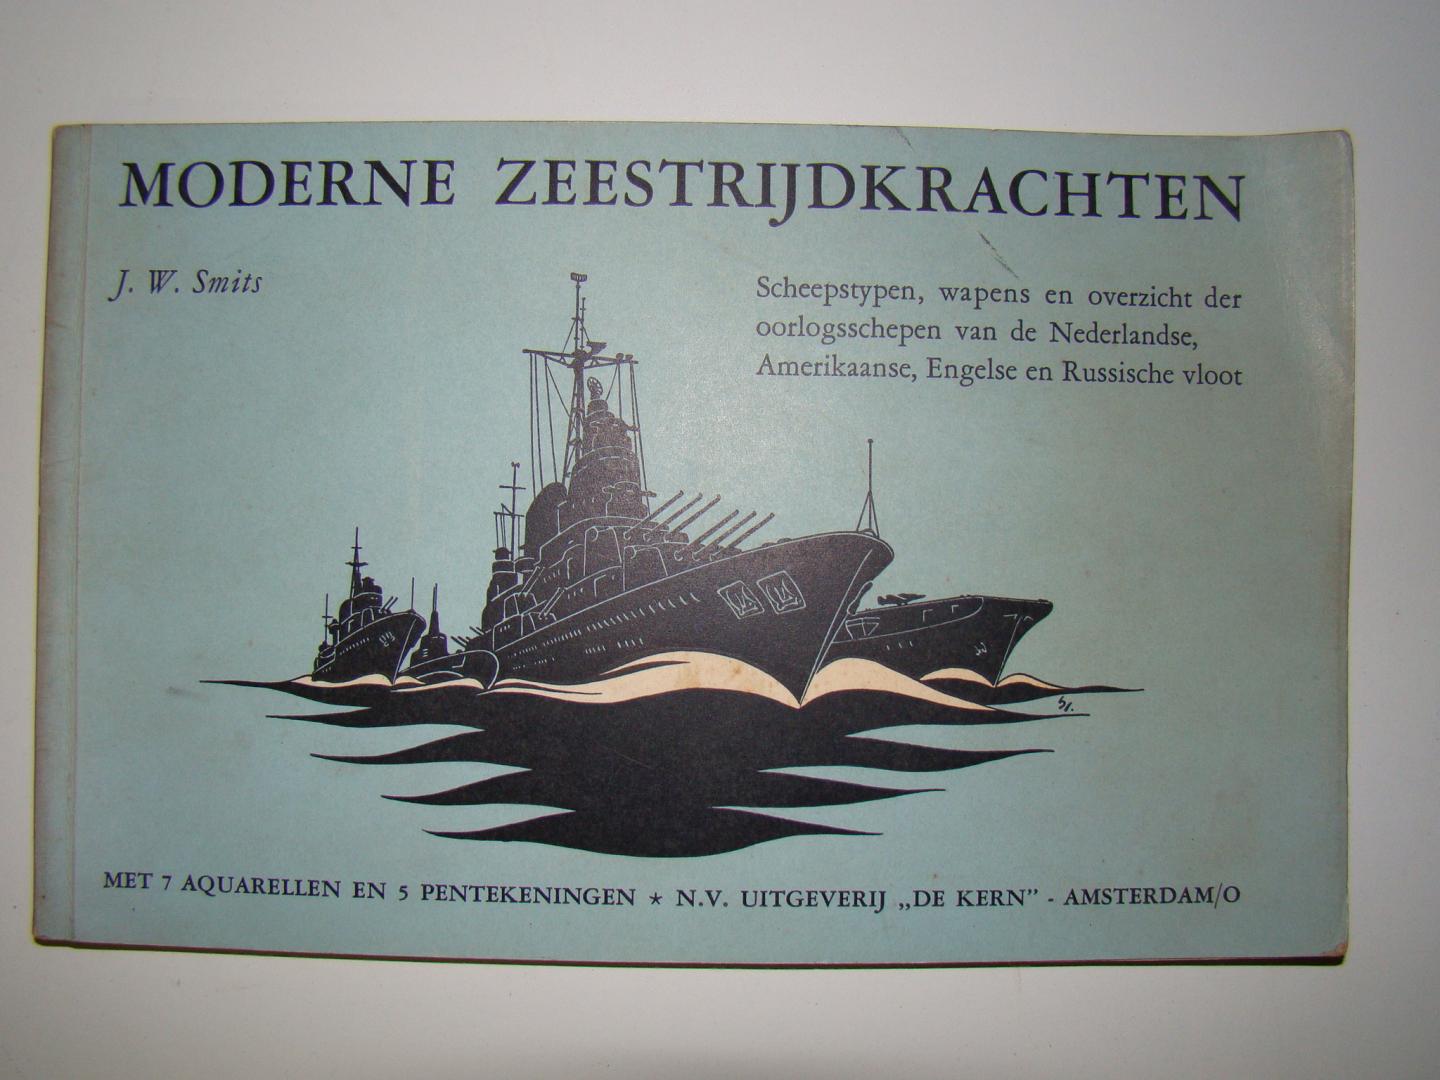 Smits, J.W. - Moderne zeestrijdkrachten. Scheepstypen, wapens en overzicht der oorlogsschepen van de Nederlandse, Amerikaanse, Engelse en Russische vloot.